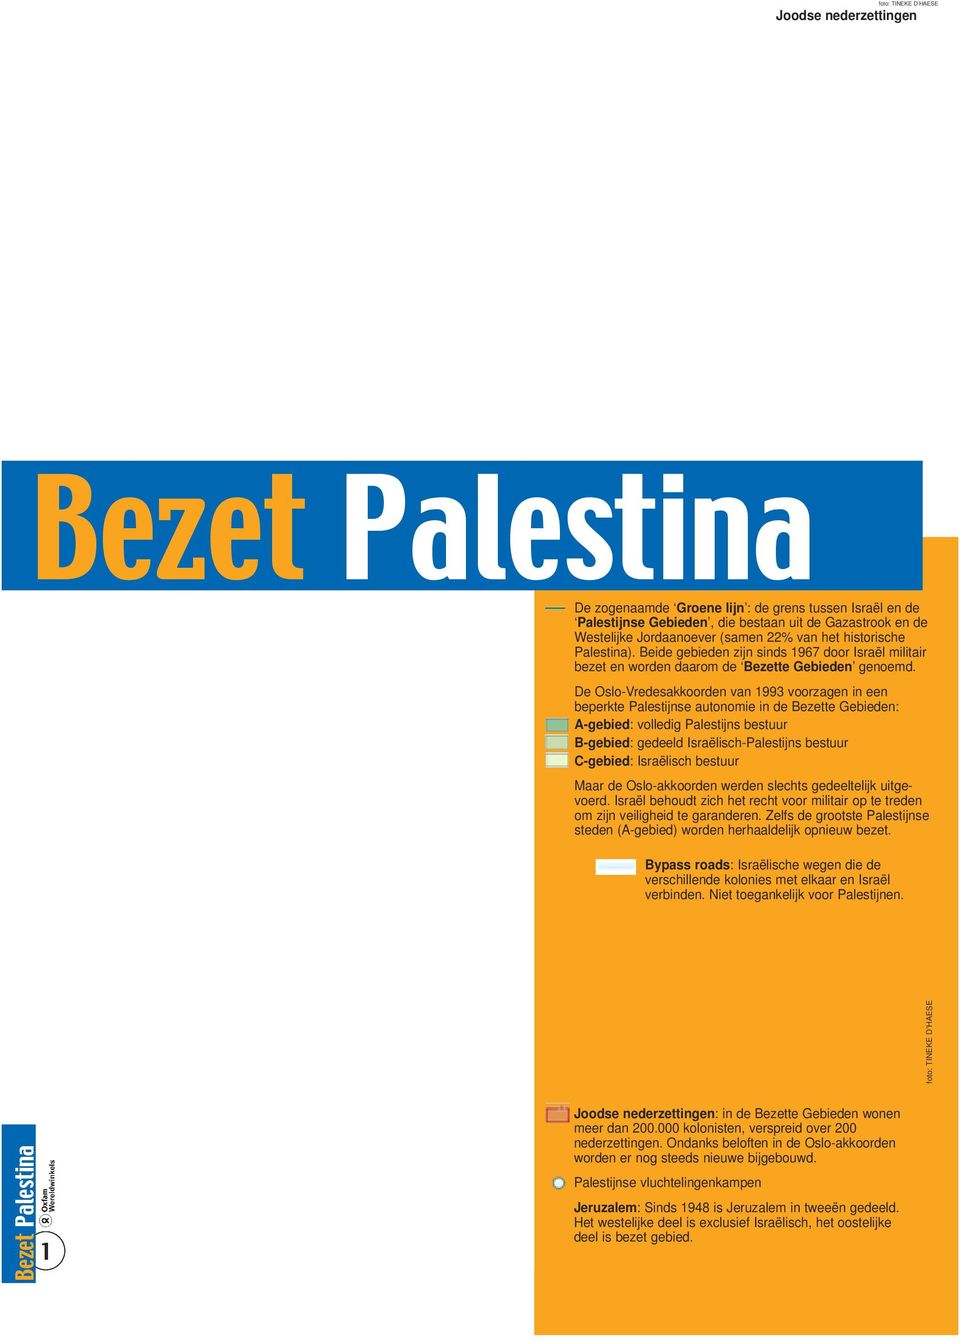 De Oslo-Vredesakkoorden van 1993 voorzagen in een beperkte Palestijnse autonomie in de Bezette Gebieden: A-gebied: volledig Palestijns bestuur B-gebied: gedeeld Israëlisch-Palestijns bestuur